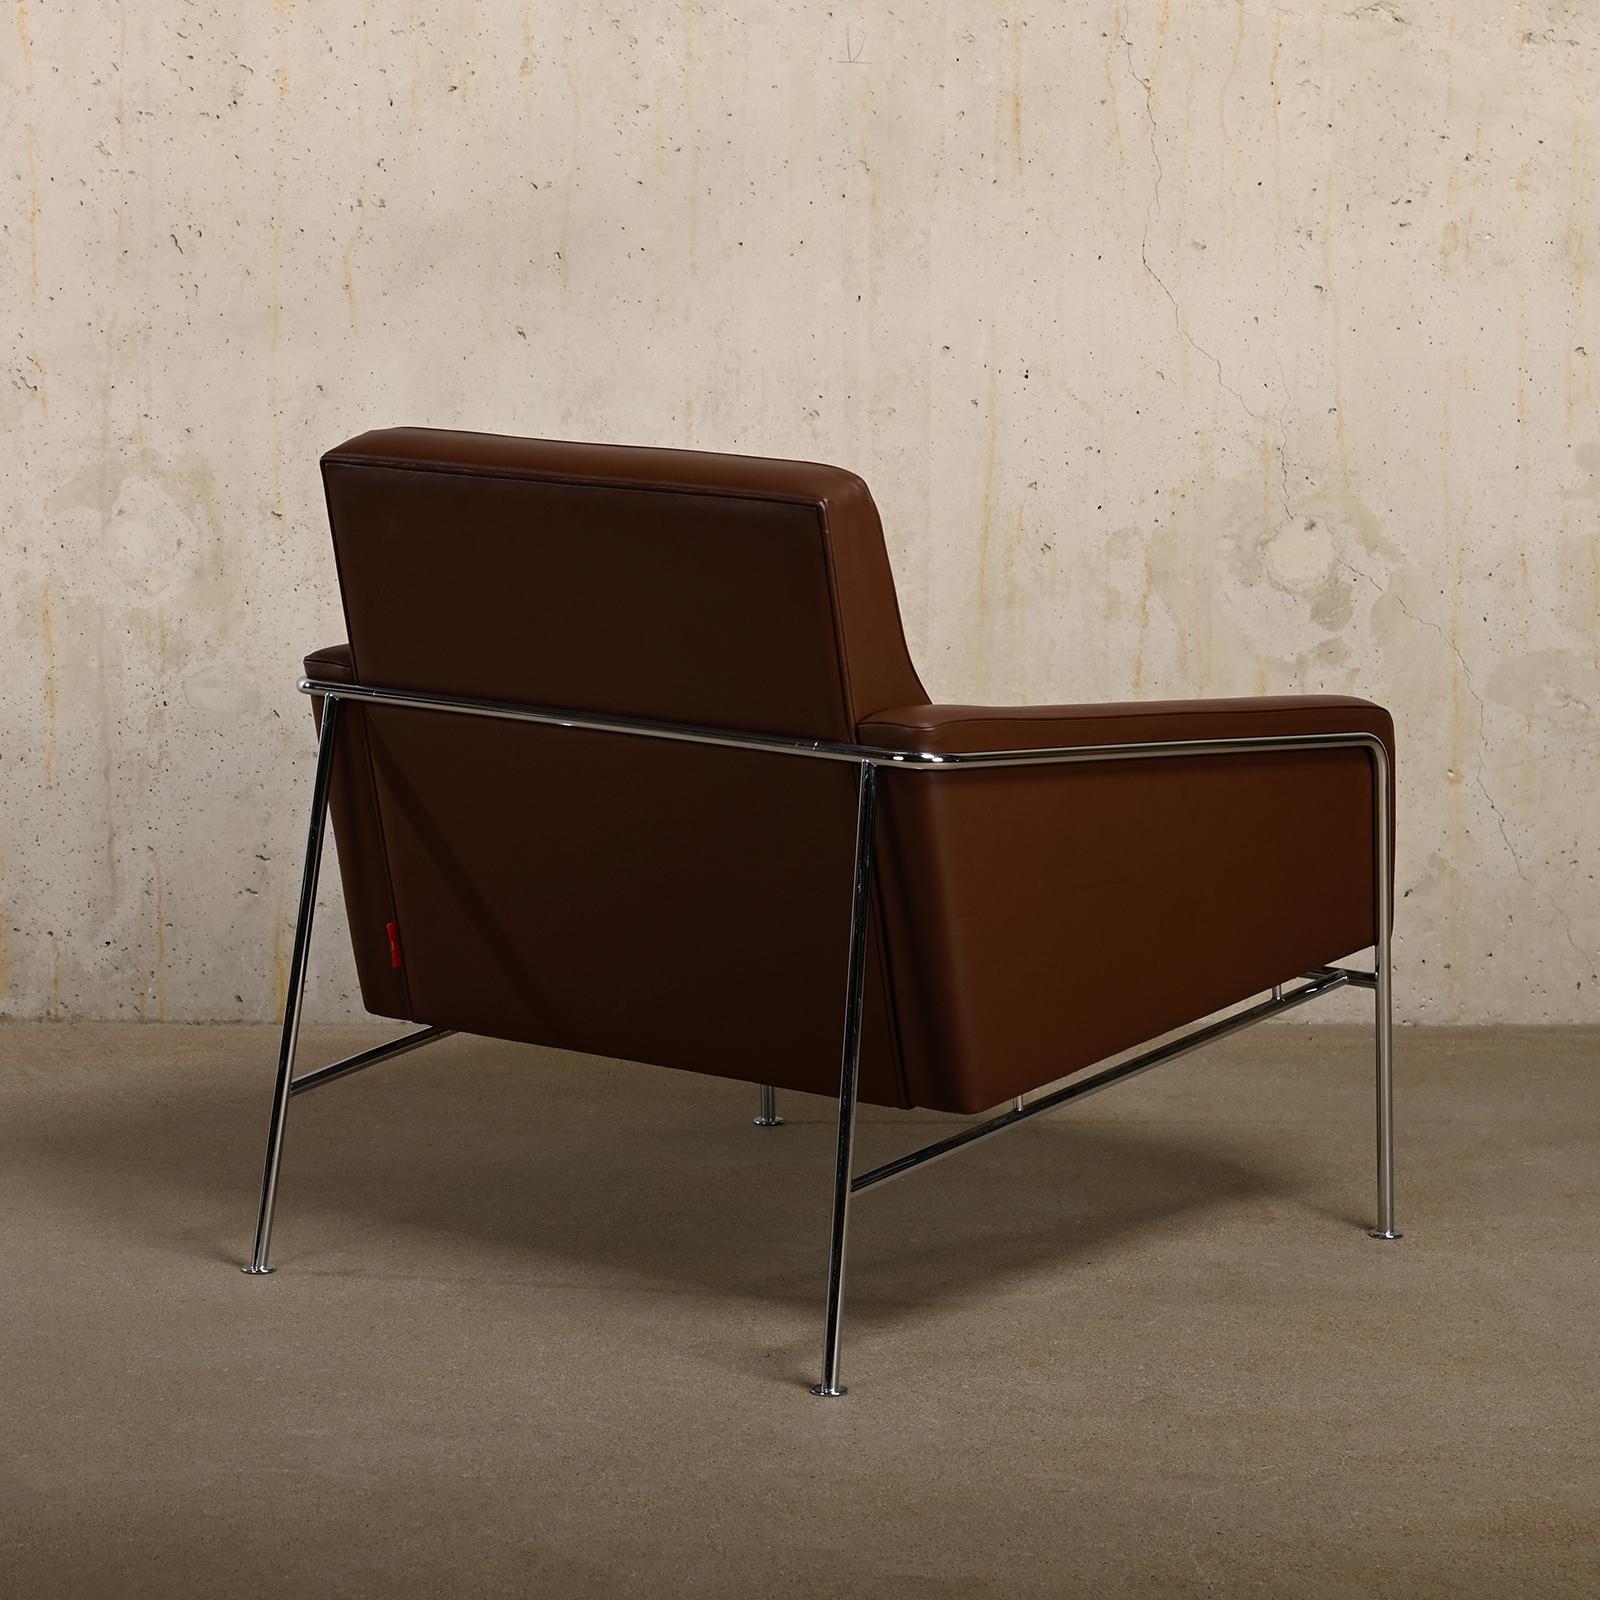 Scandinavian Modern Arne Jacobsen Lounge Chair 3300 Series in Chestnut leather for Fritz Hansen For Sale